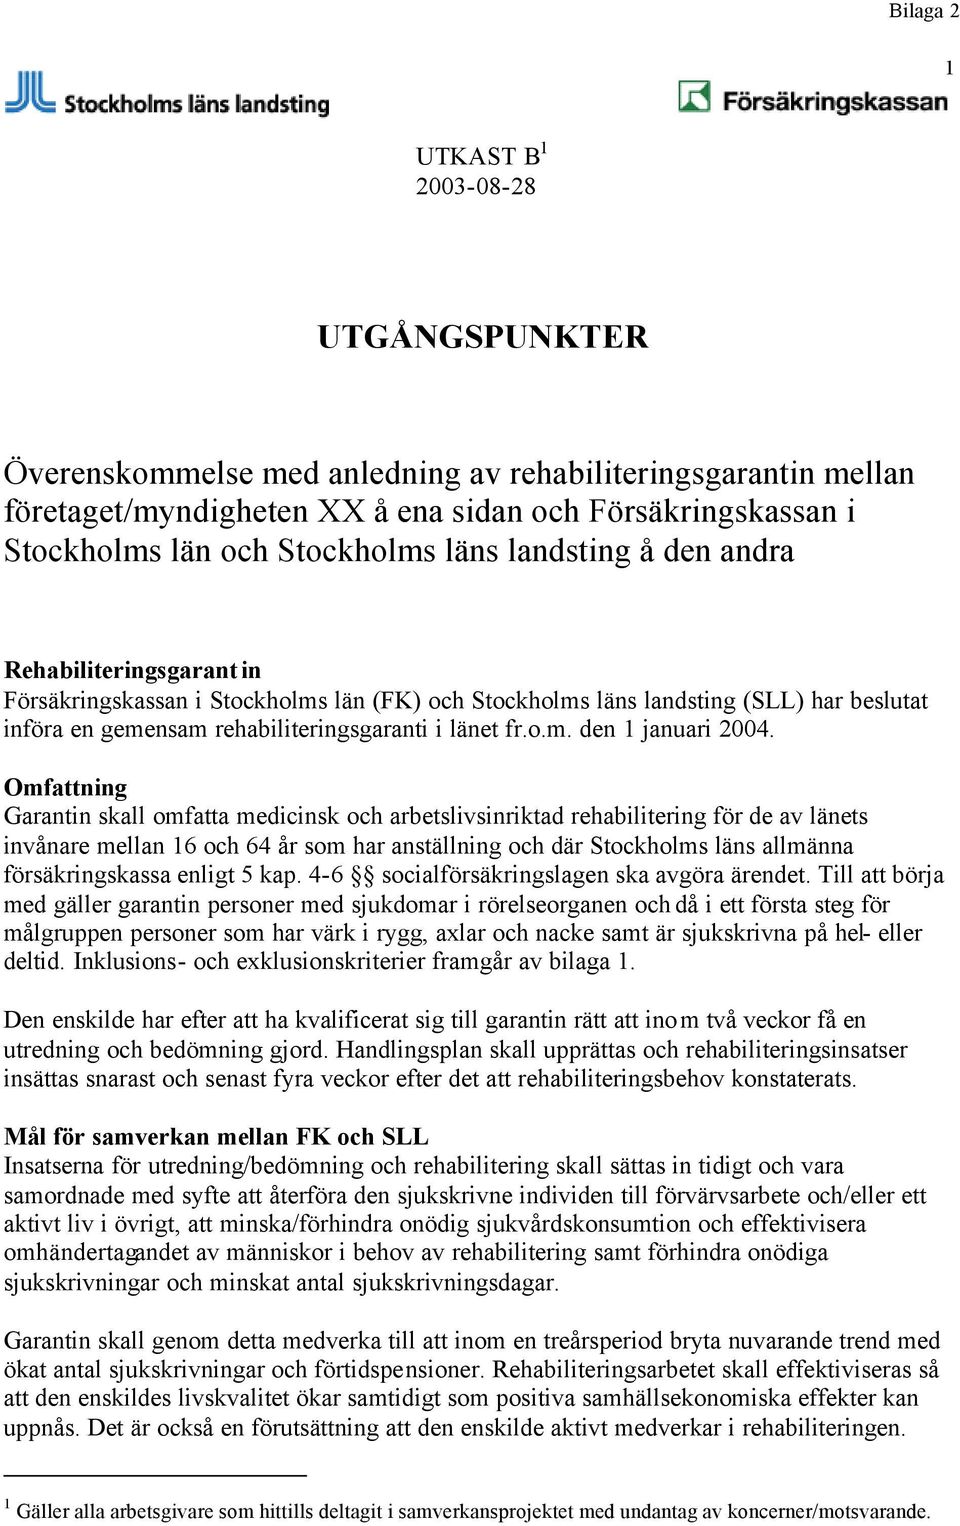 Omfattning Garantin skall omfatta medicinsk och arbetslivsinriktad rehabilitering för de av länets invånare mellan 16 och 64 år som har anställning och där Stockholms läns allmänna försäkringskassa